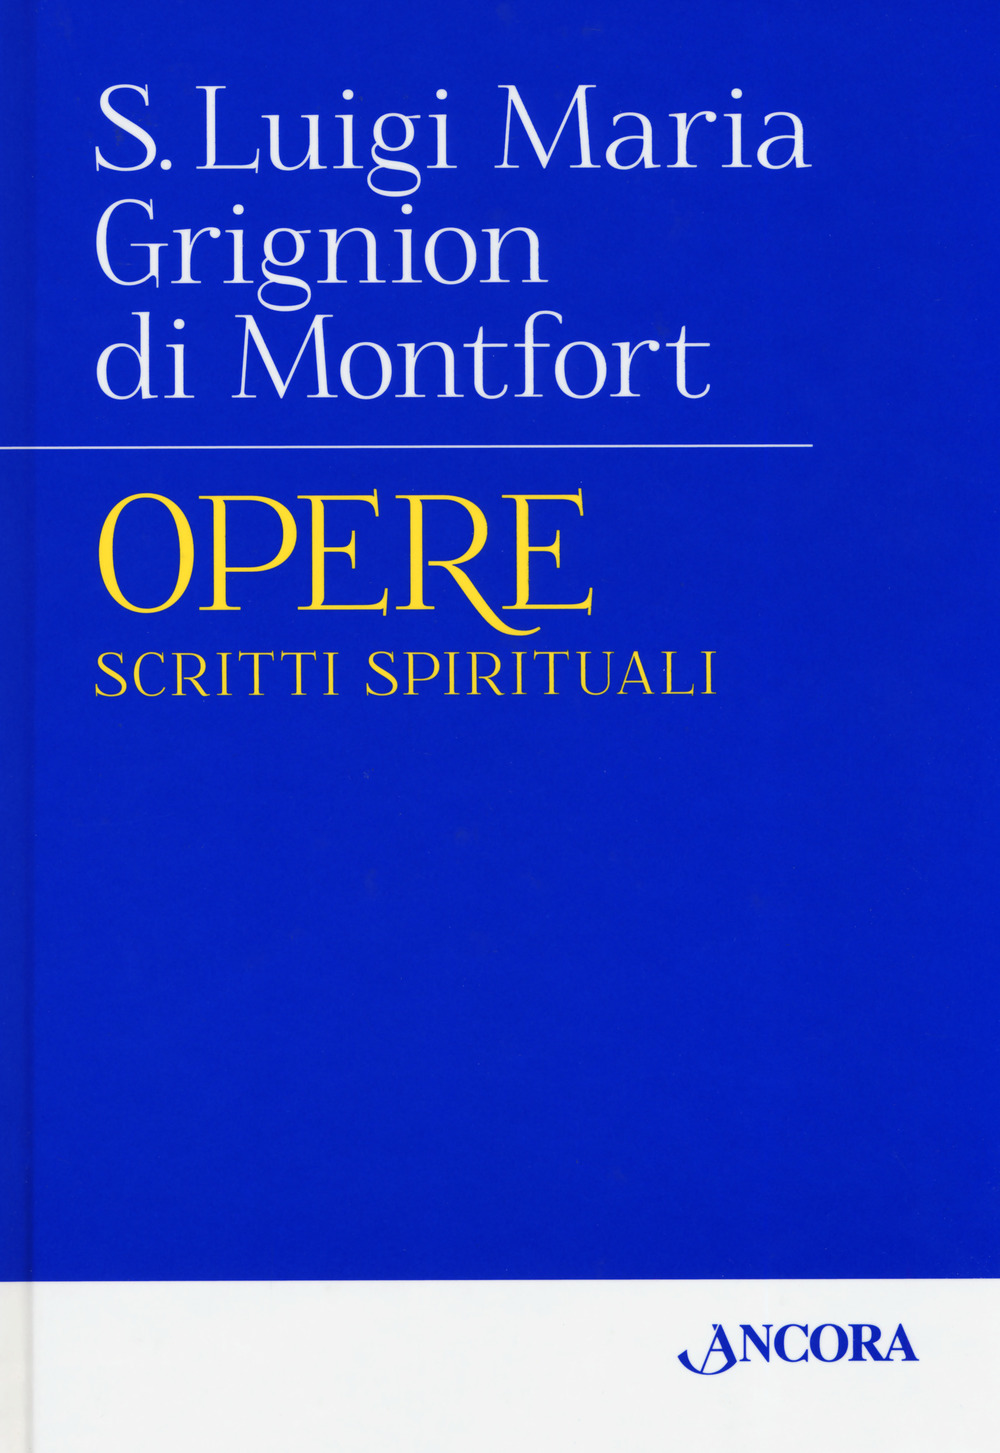 Libri Grignon de Montfort Luigi Maria - Opere Vol 01 NUOVO SIGILLATO, EDIZIONE DEL 17/09/2019 SUBITO DISPONIBILE